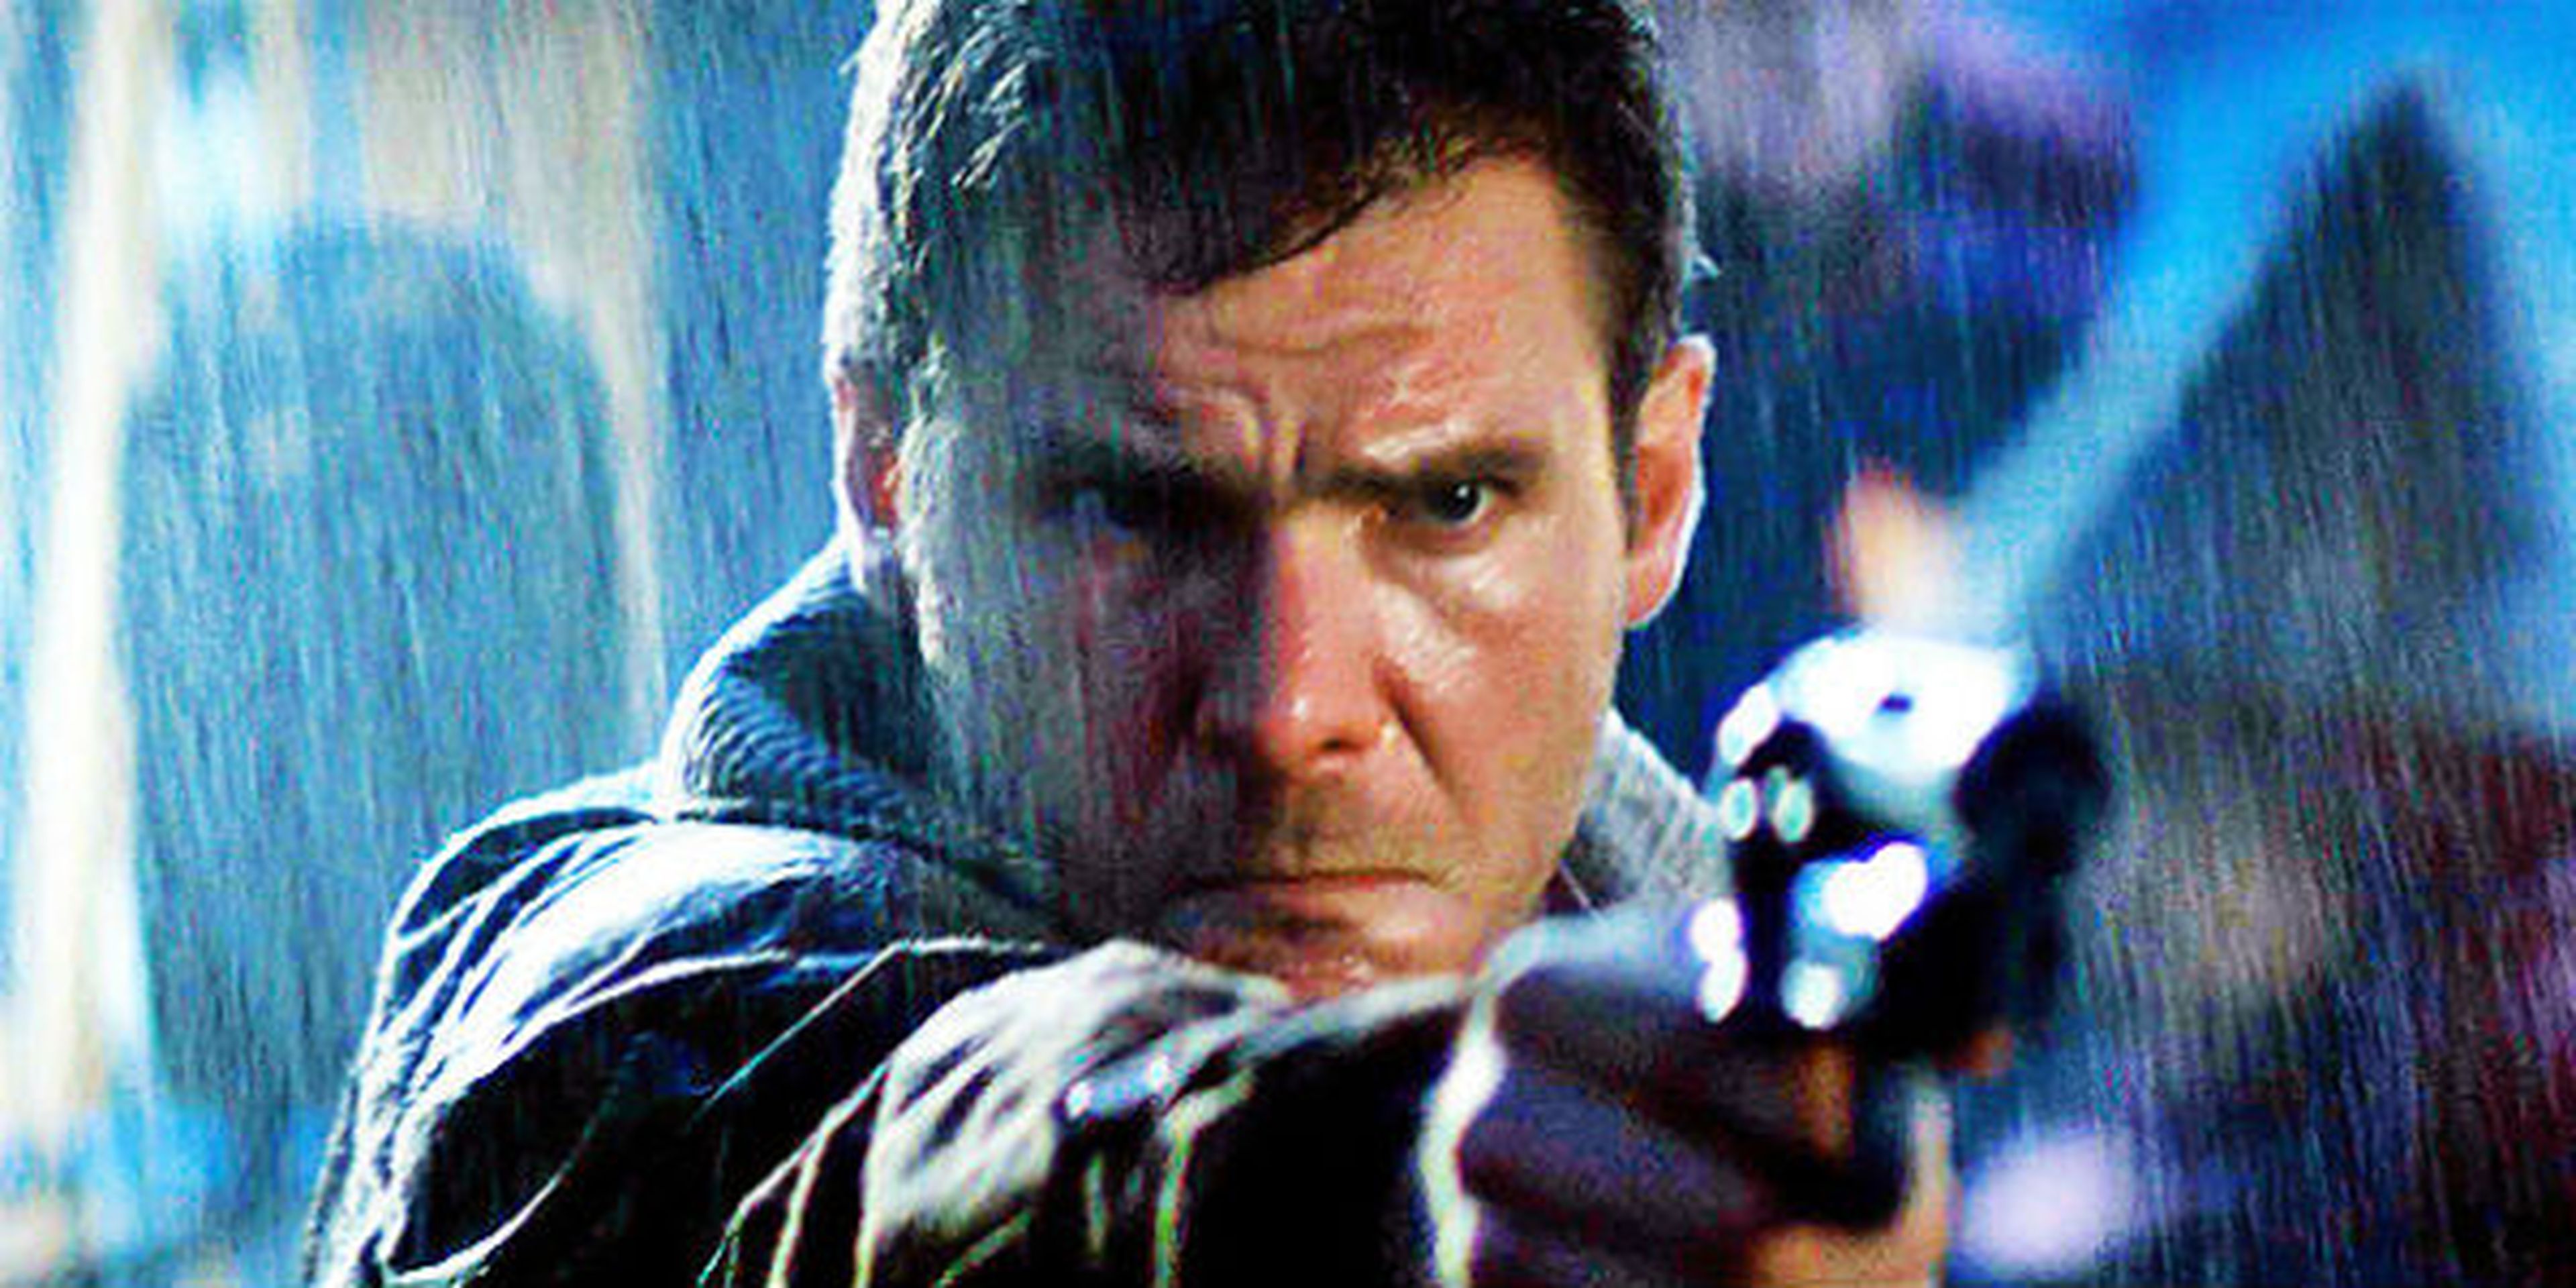 Blade Runner 2